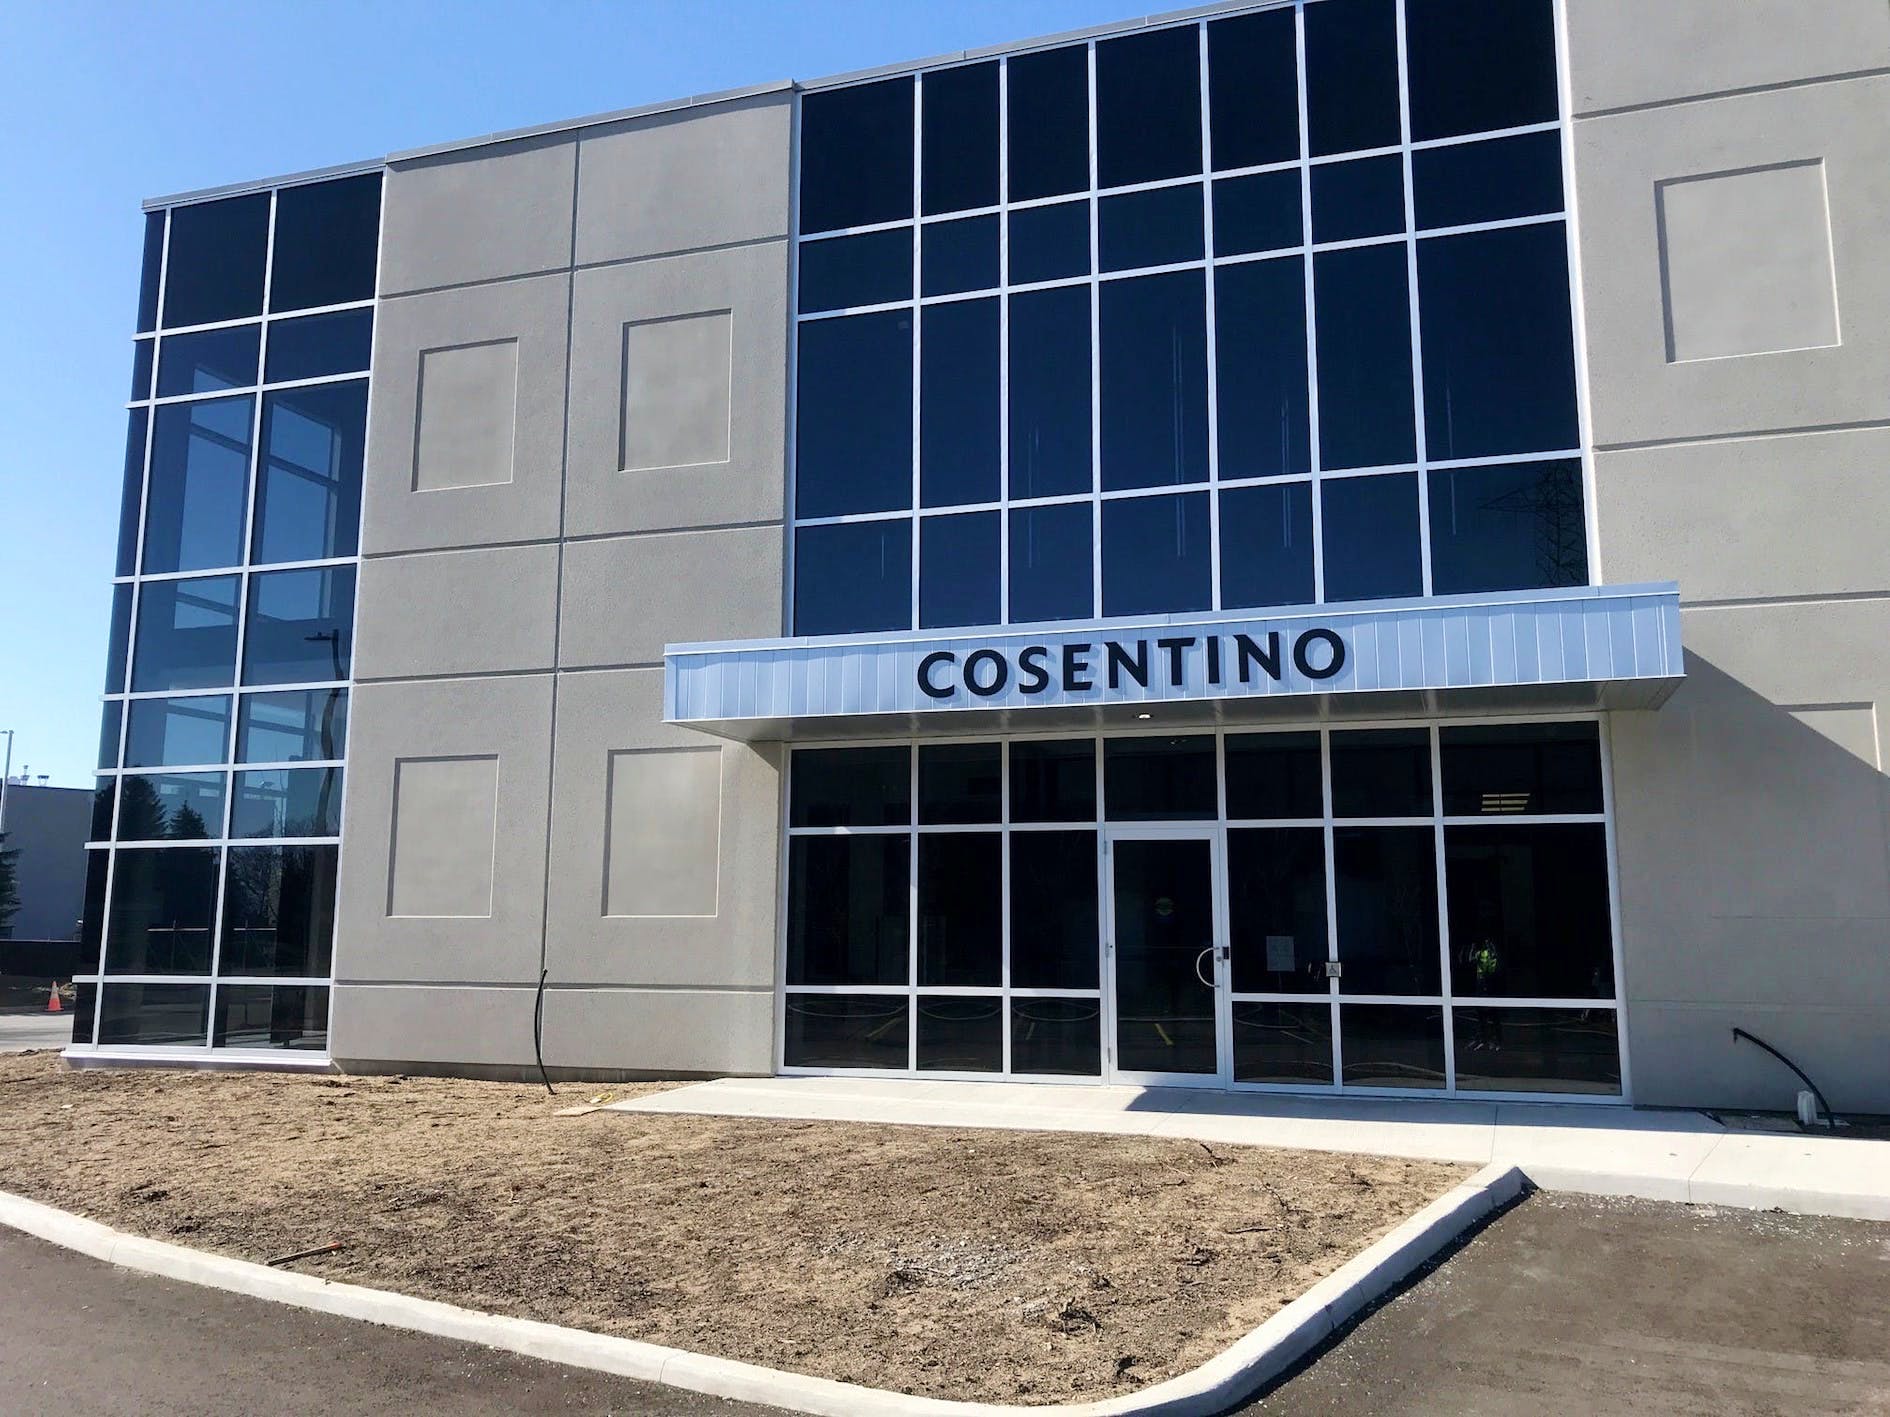 Image of Cosentino Center Ottawa 6 in Cosentino opens its first Center in Poland - Cosentino